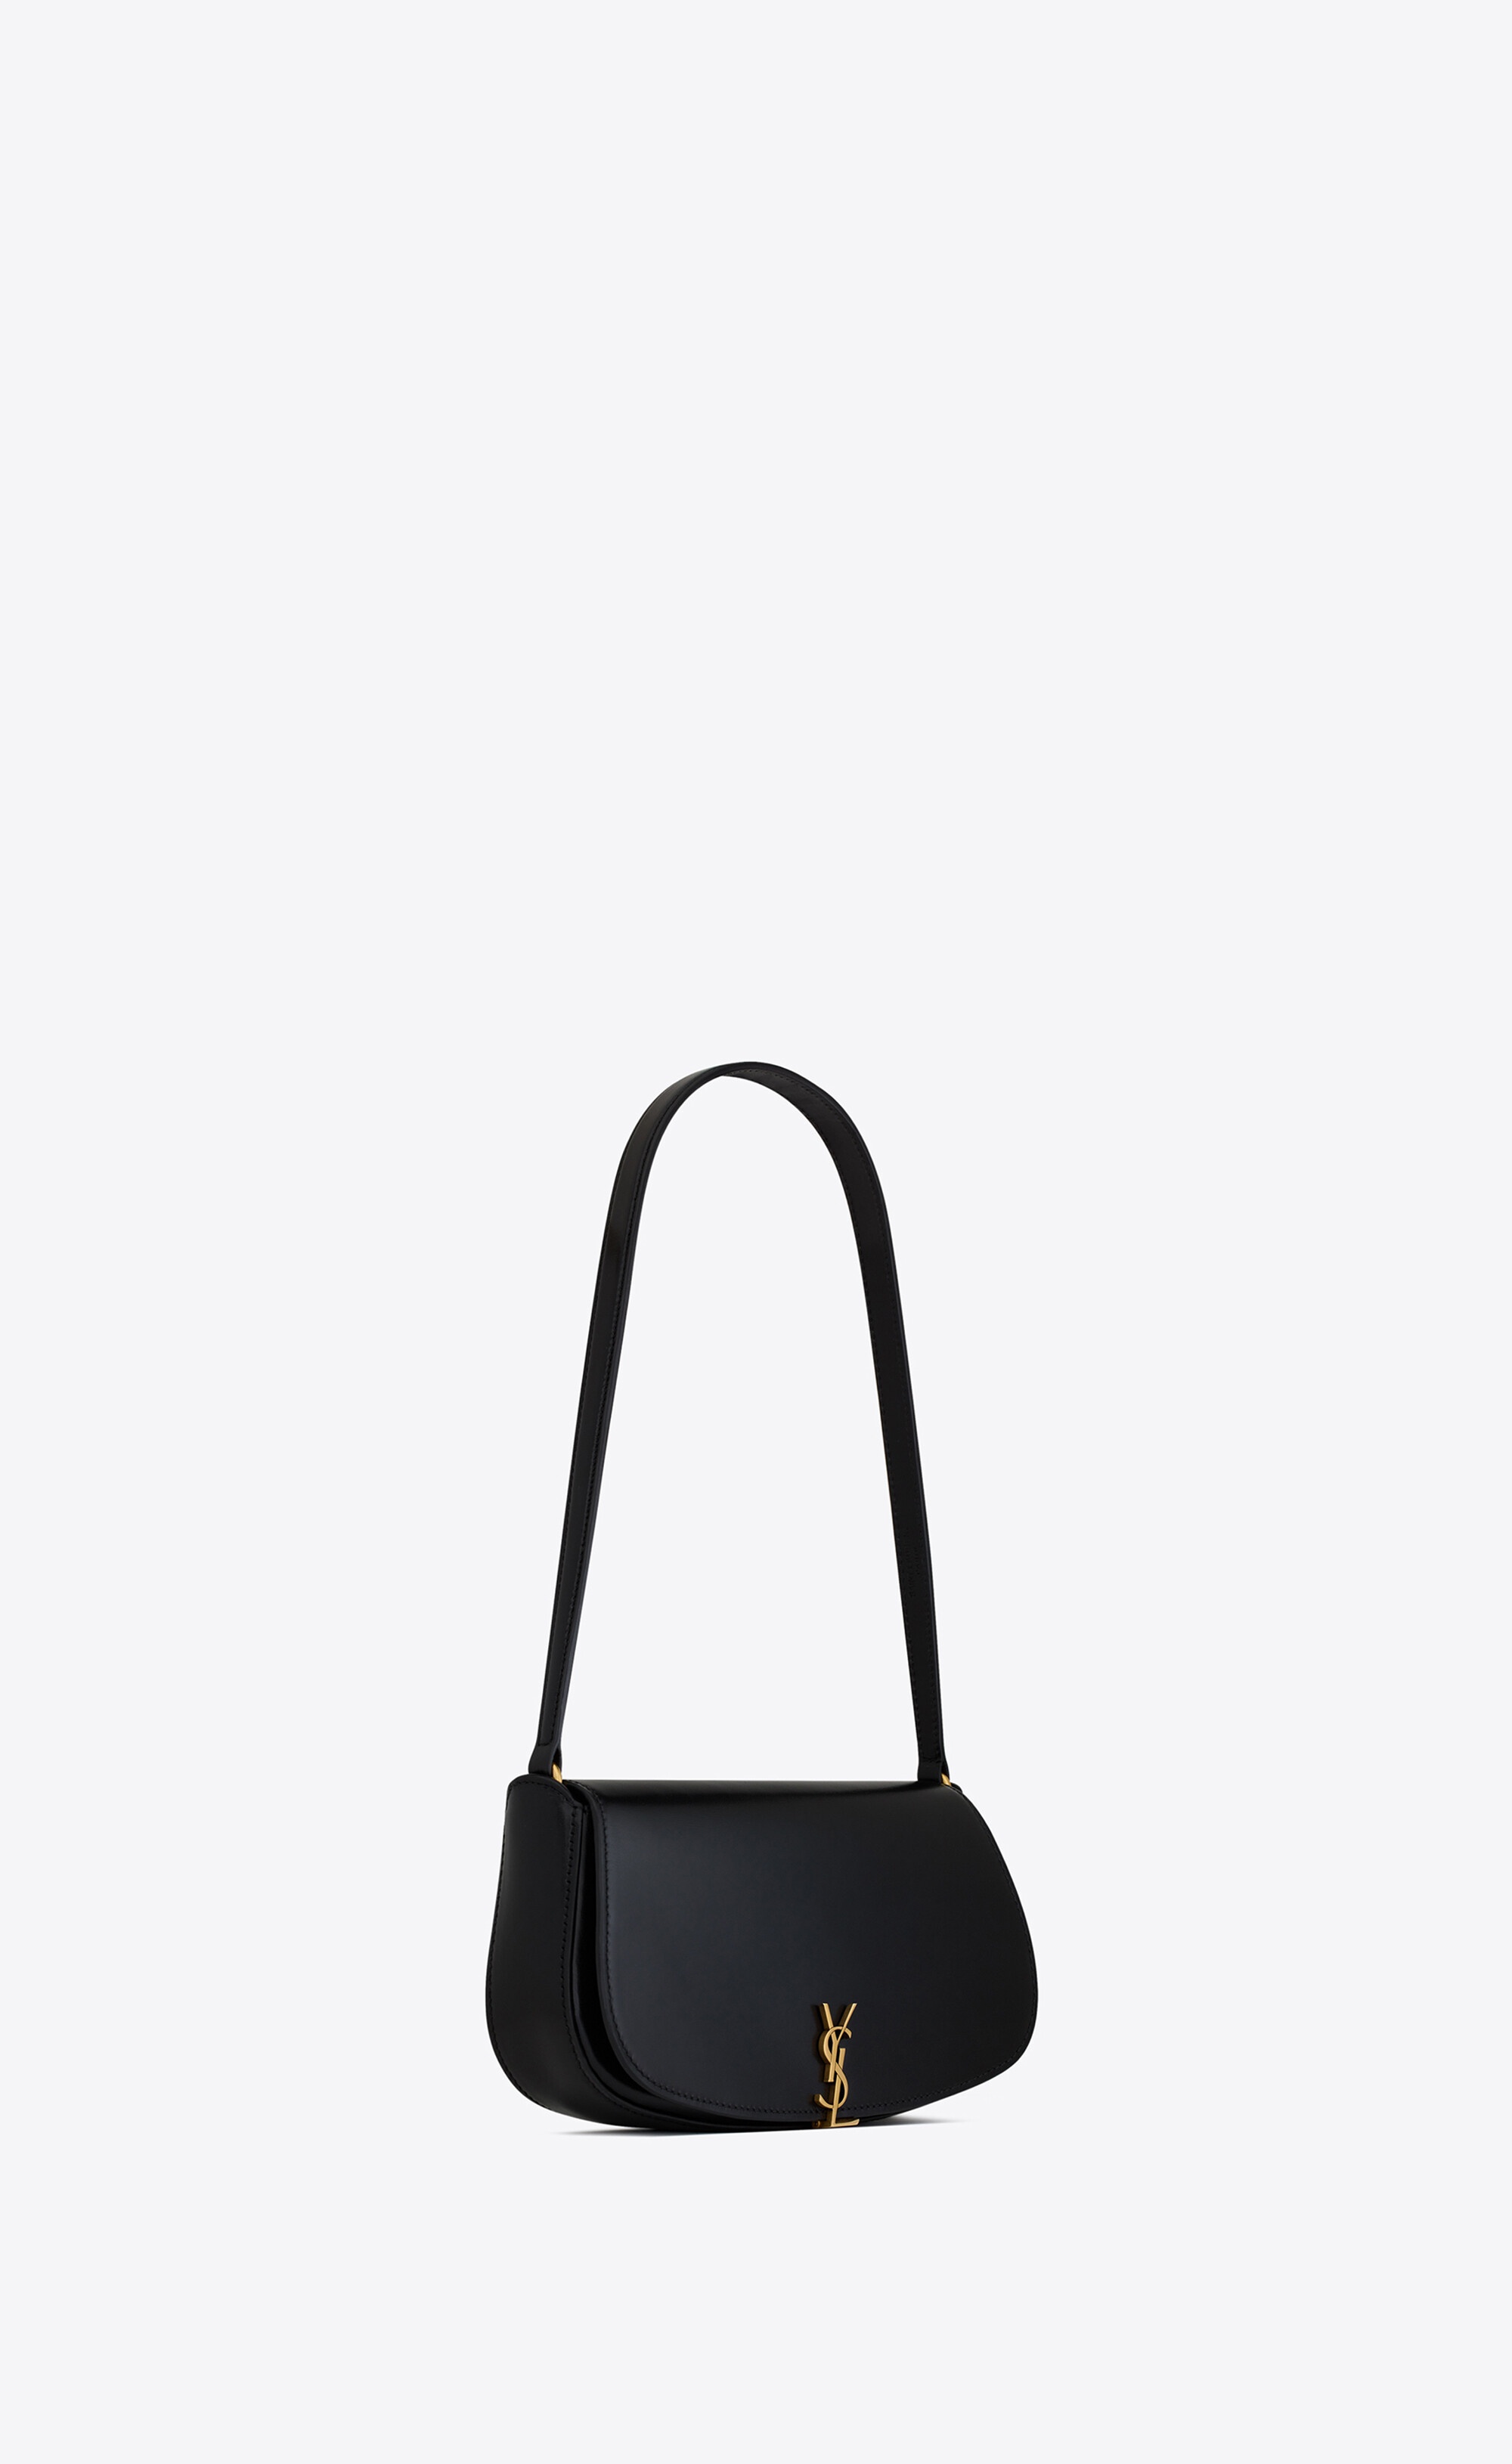 voltaire mini shoulder bag in box saint laurent leather - 8